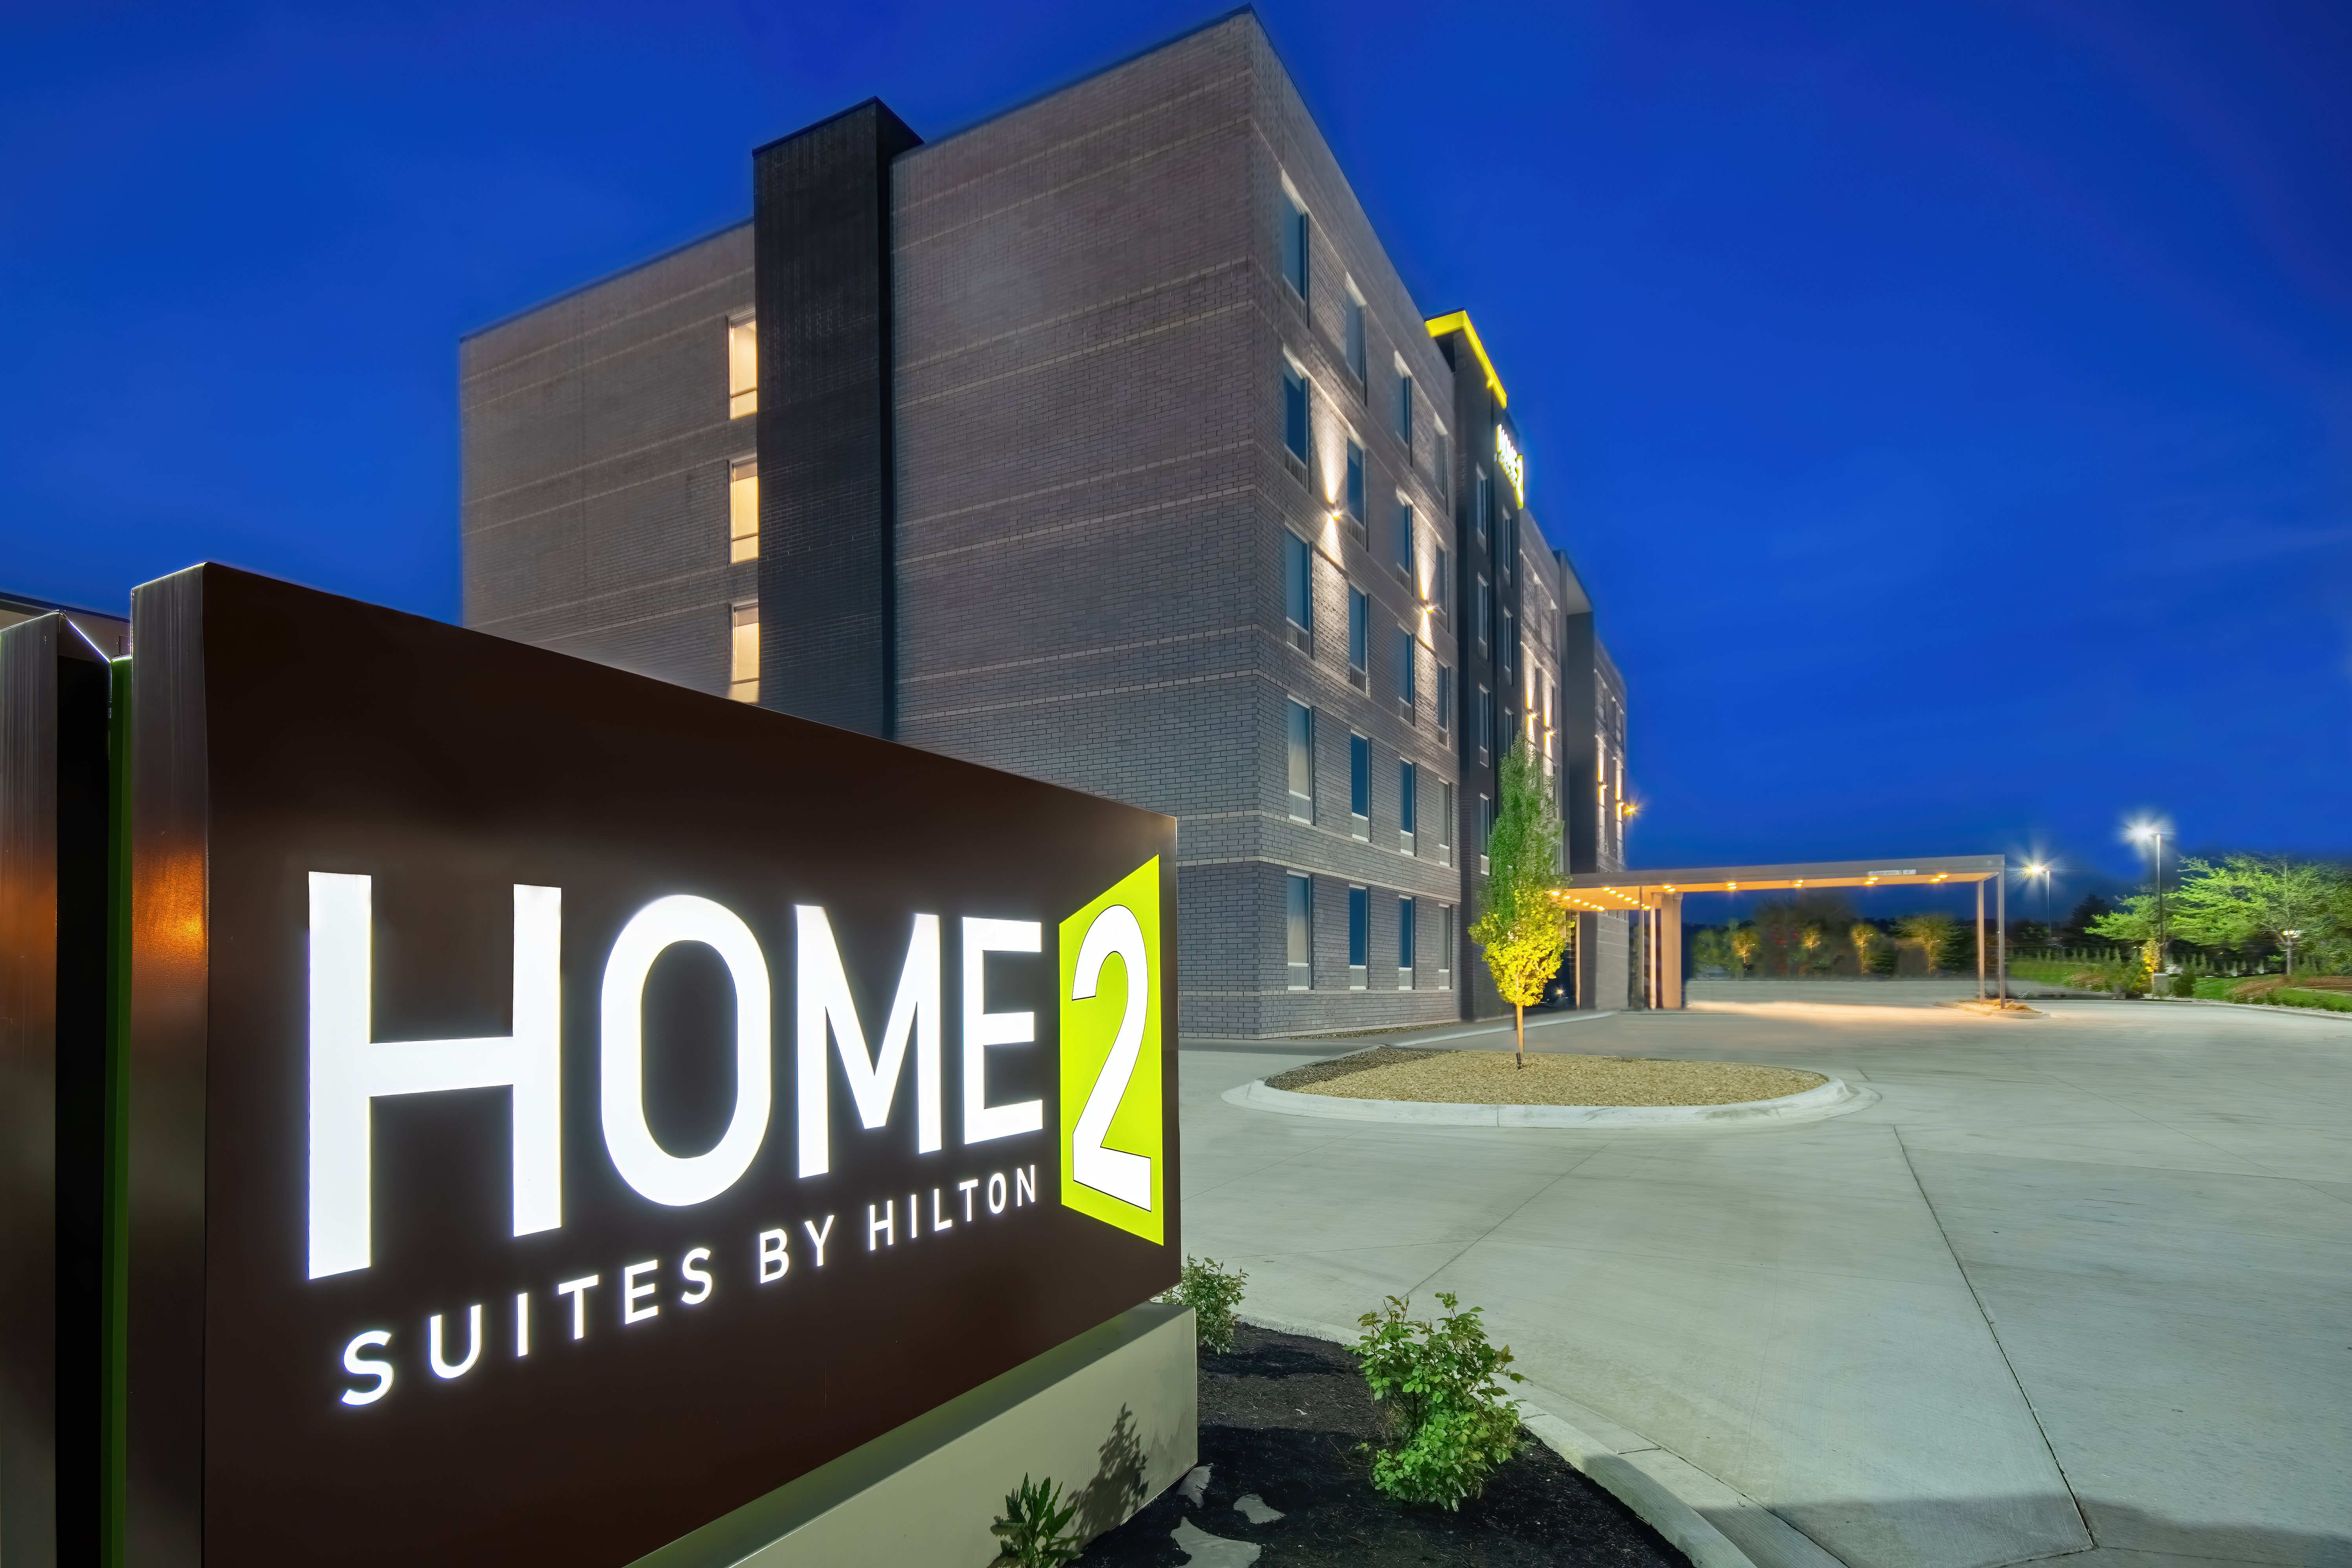 Photo of Home2 Suites by Hilton Cincinnati Oakley, Cincinnati, OH